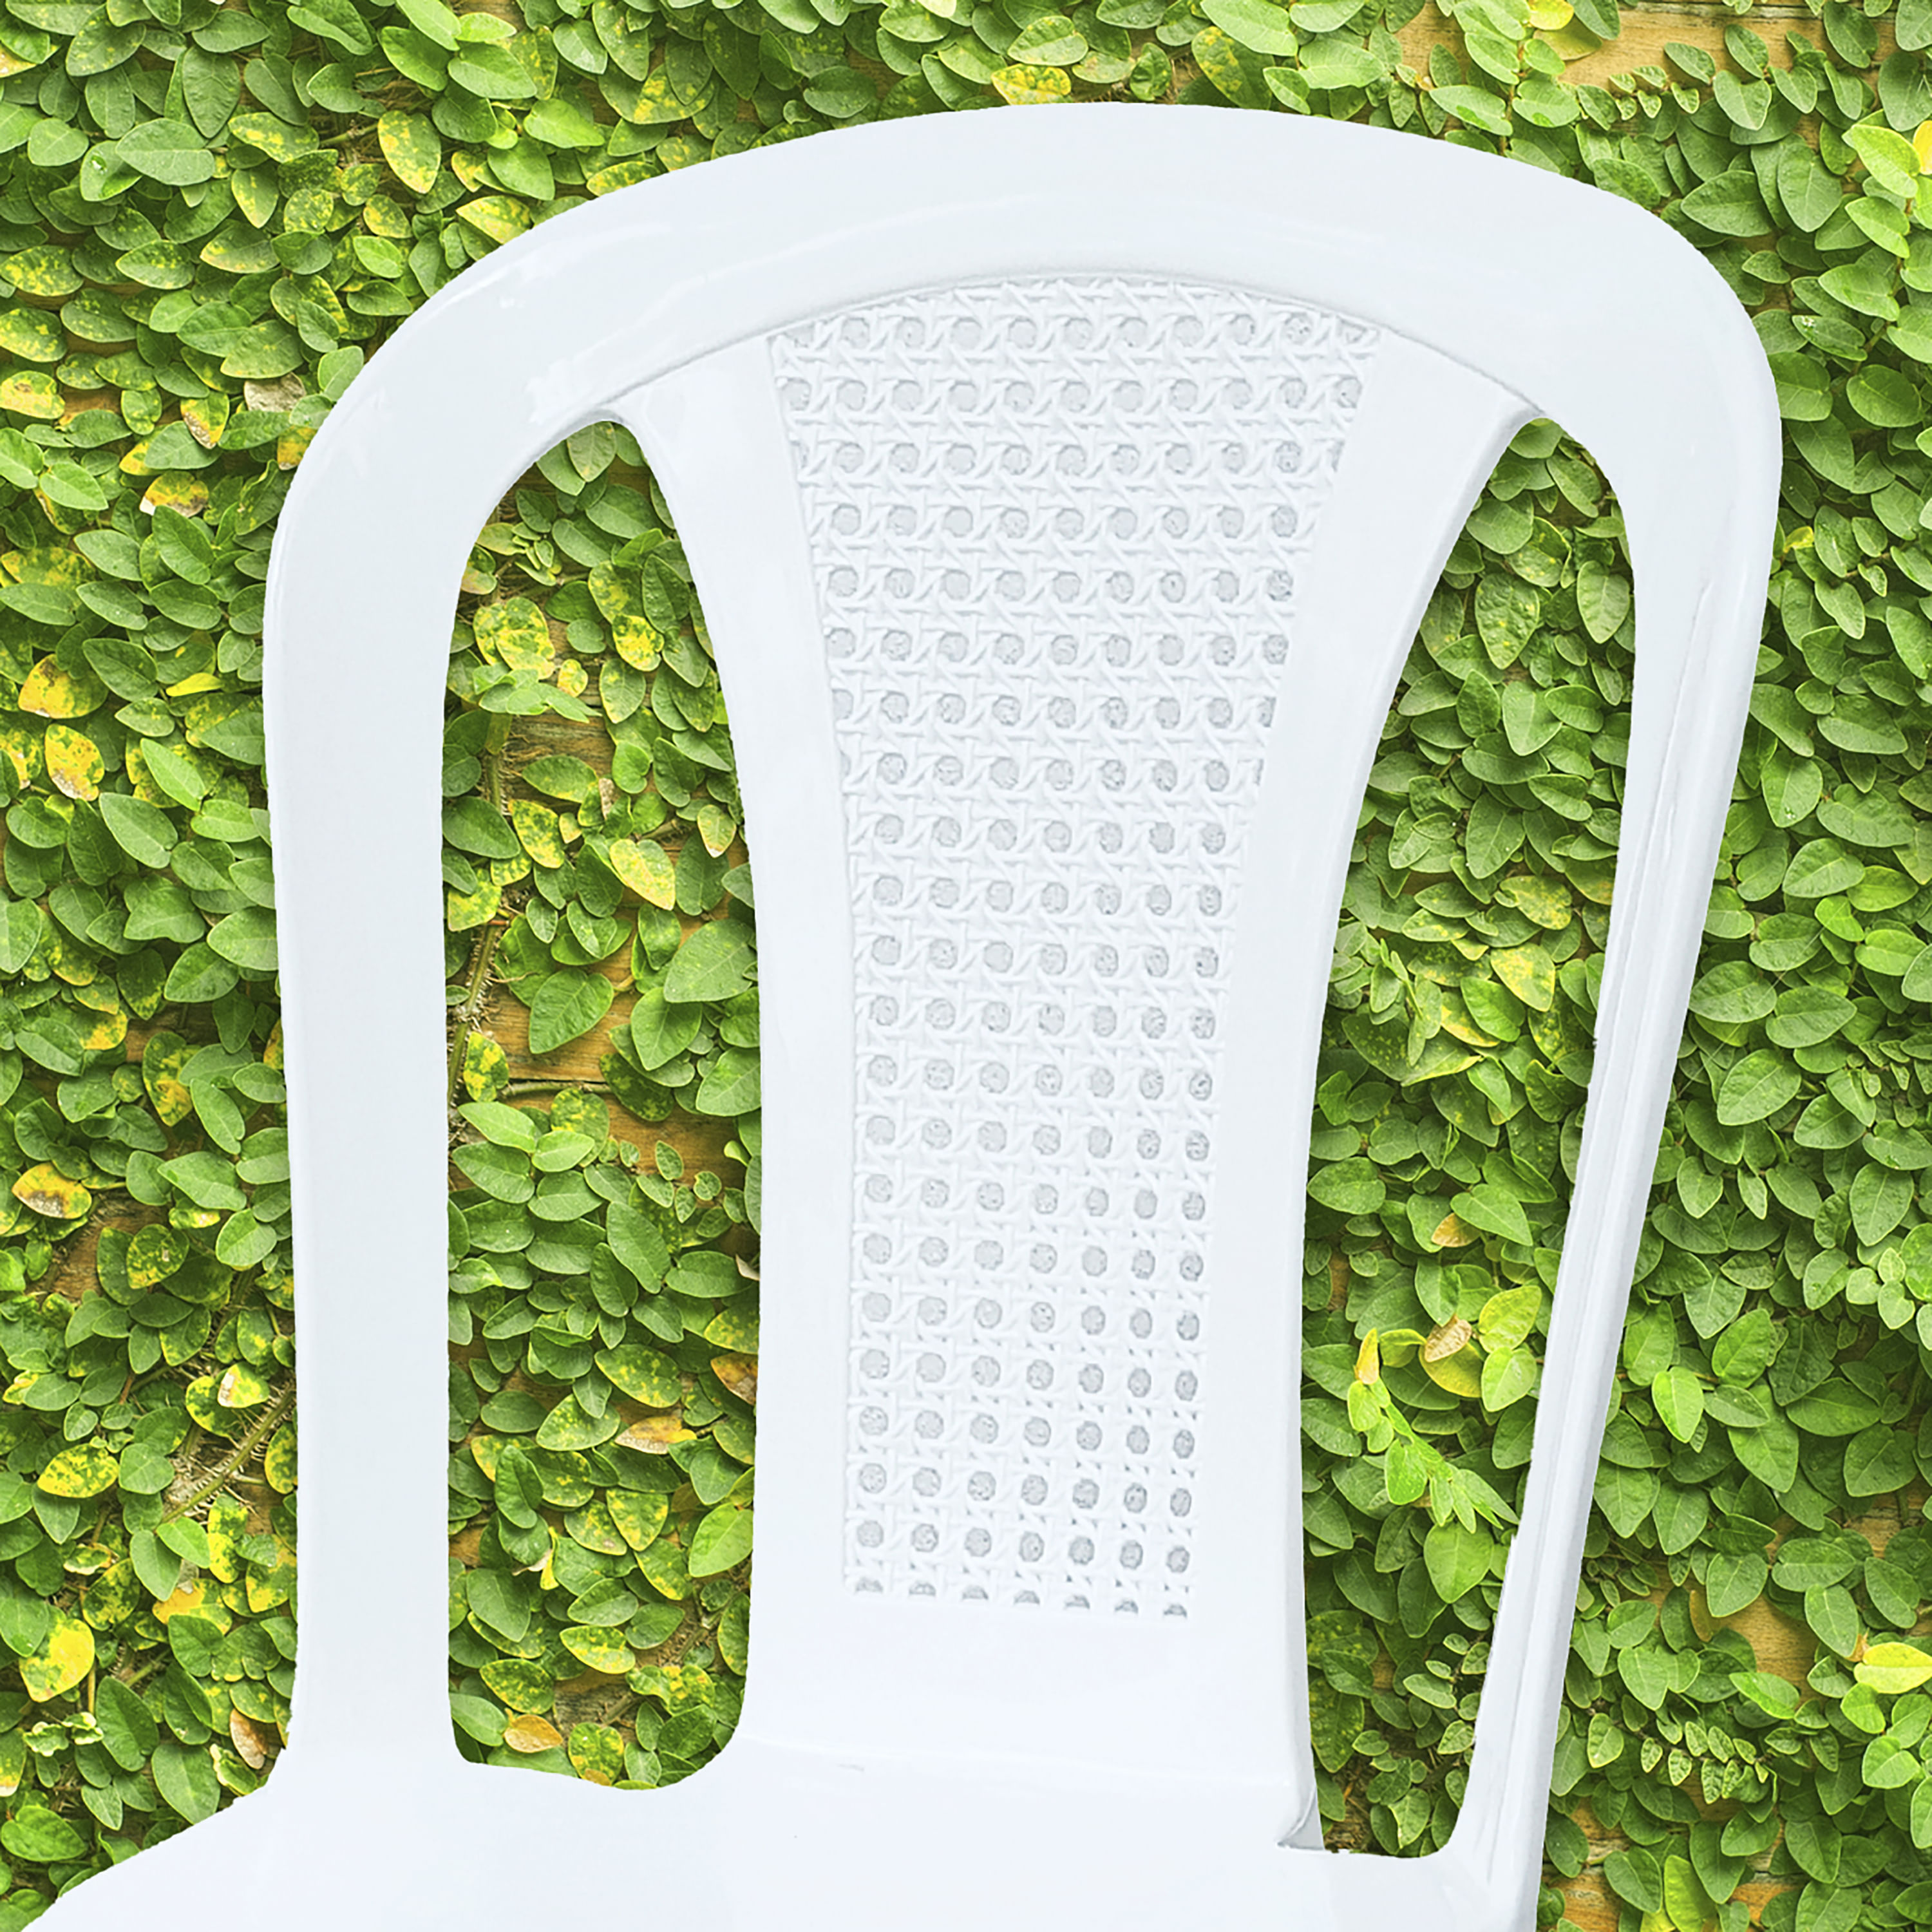 Comprar sillas romanas al mejor precio online